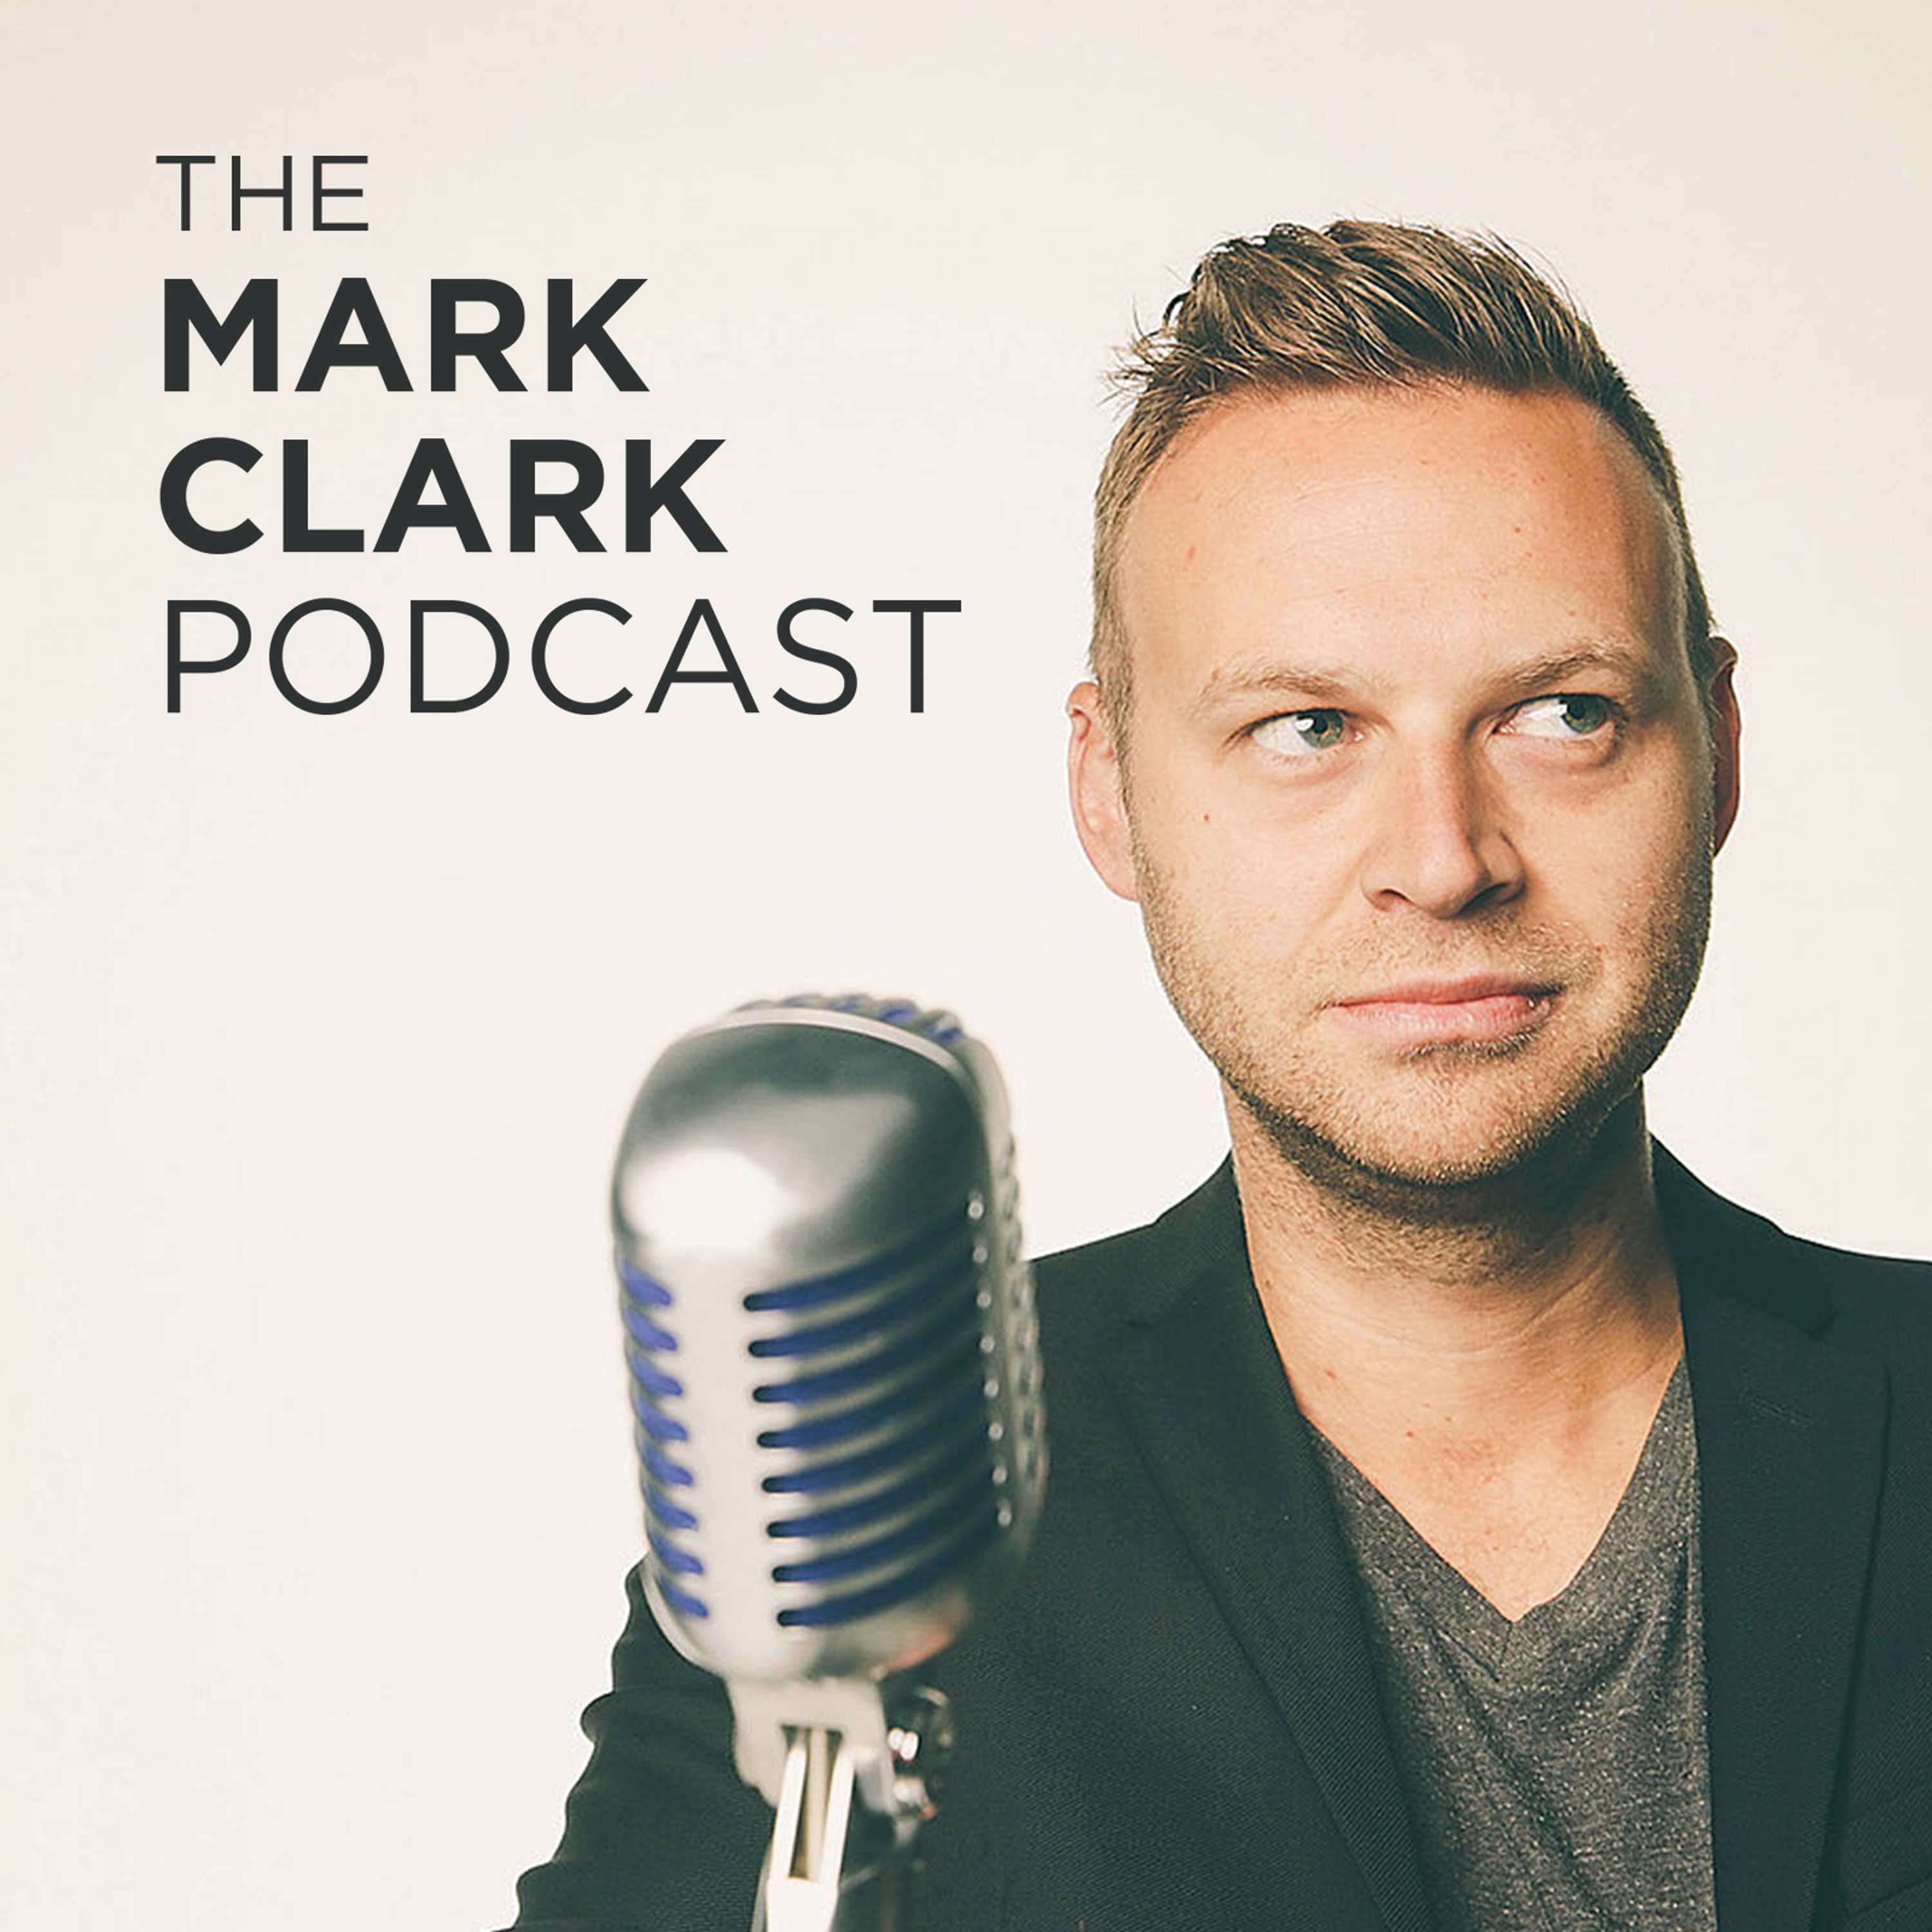 The Mark Clark Podcast